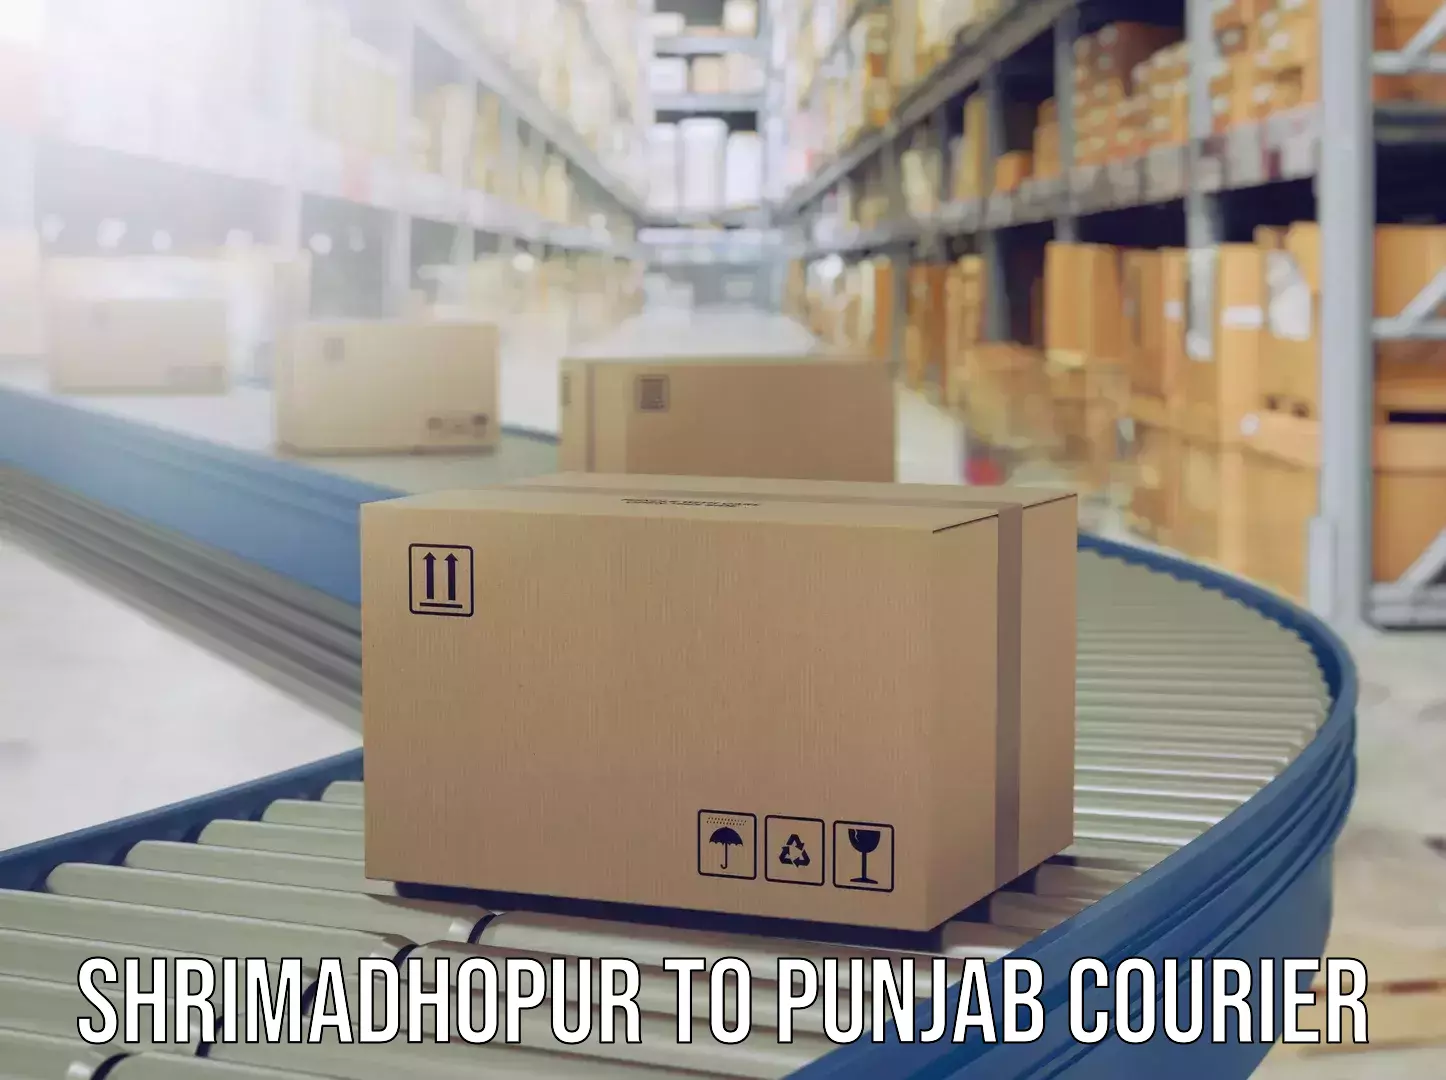 Urgent luggage shipment Shrimadhopur to Central University of Punjab Bathinda